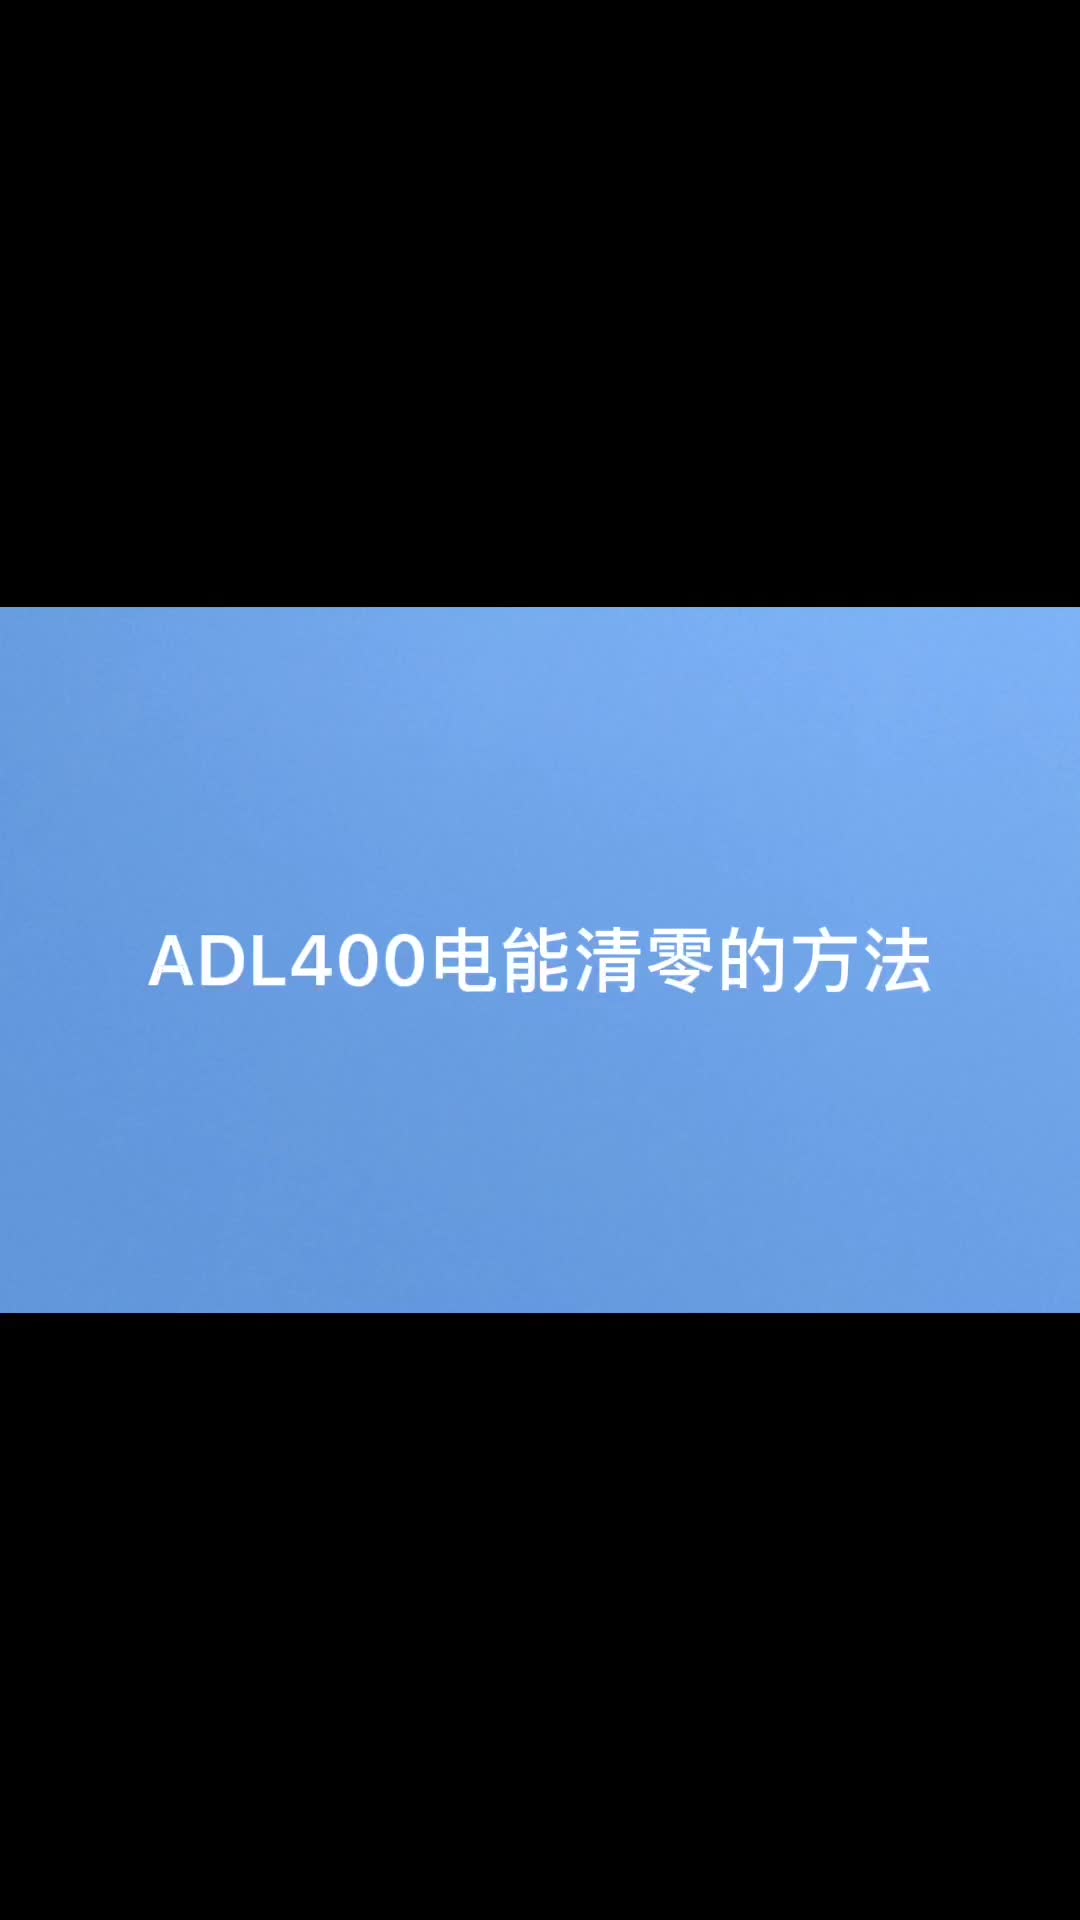 安科瑞ADL400系列三相电能表如何将电能数据清零？袁媛18701997398#仪器仪表 #安科瑞 